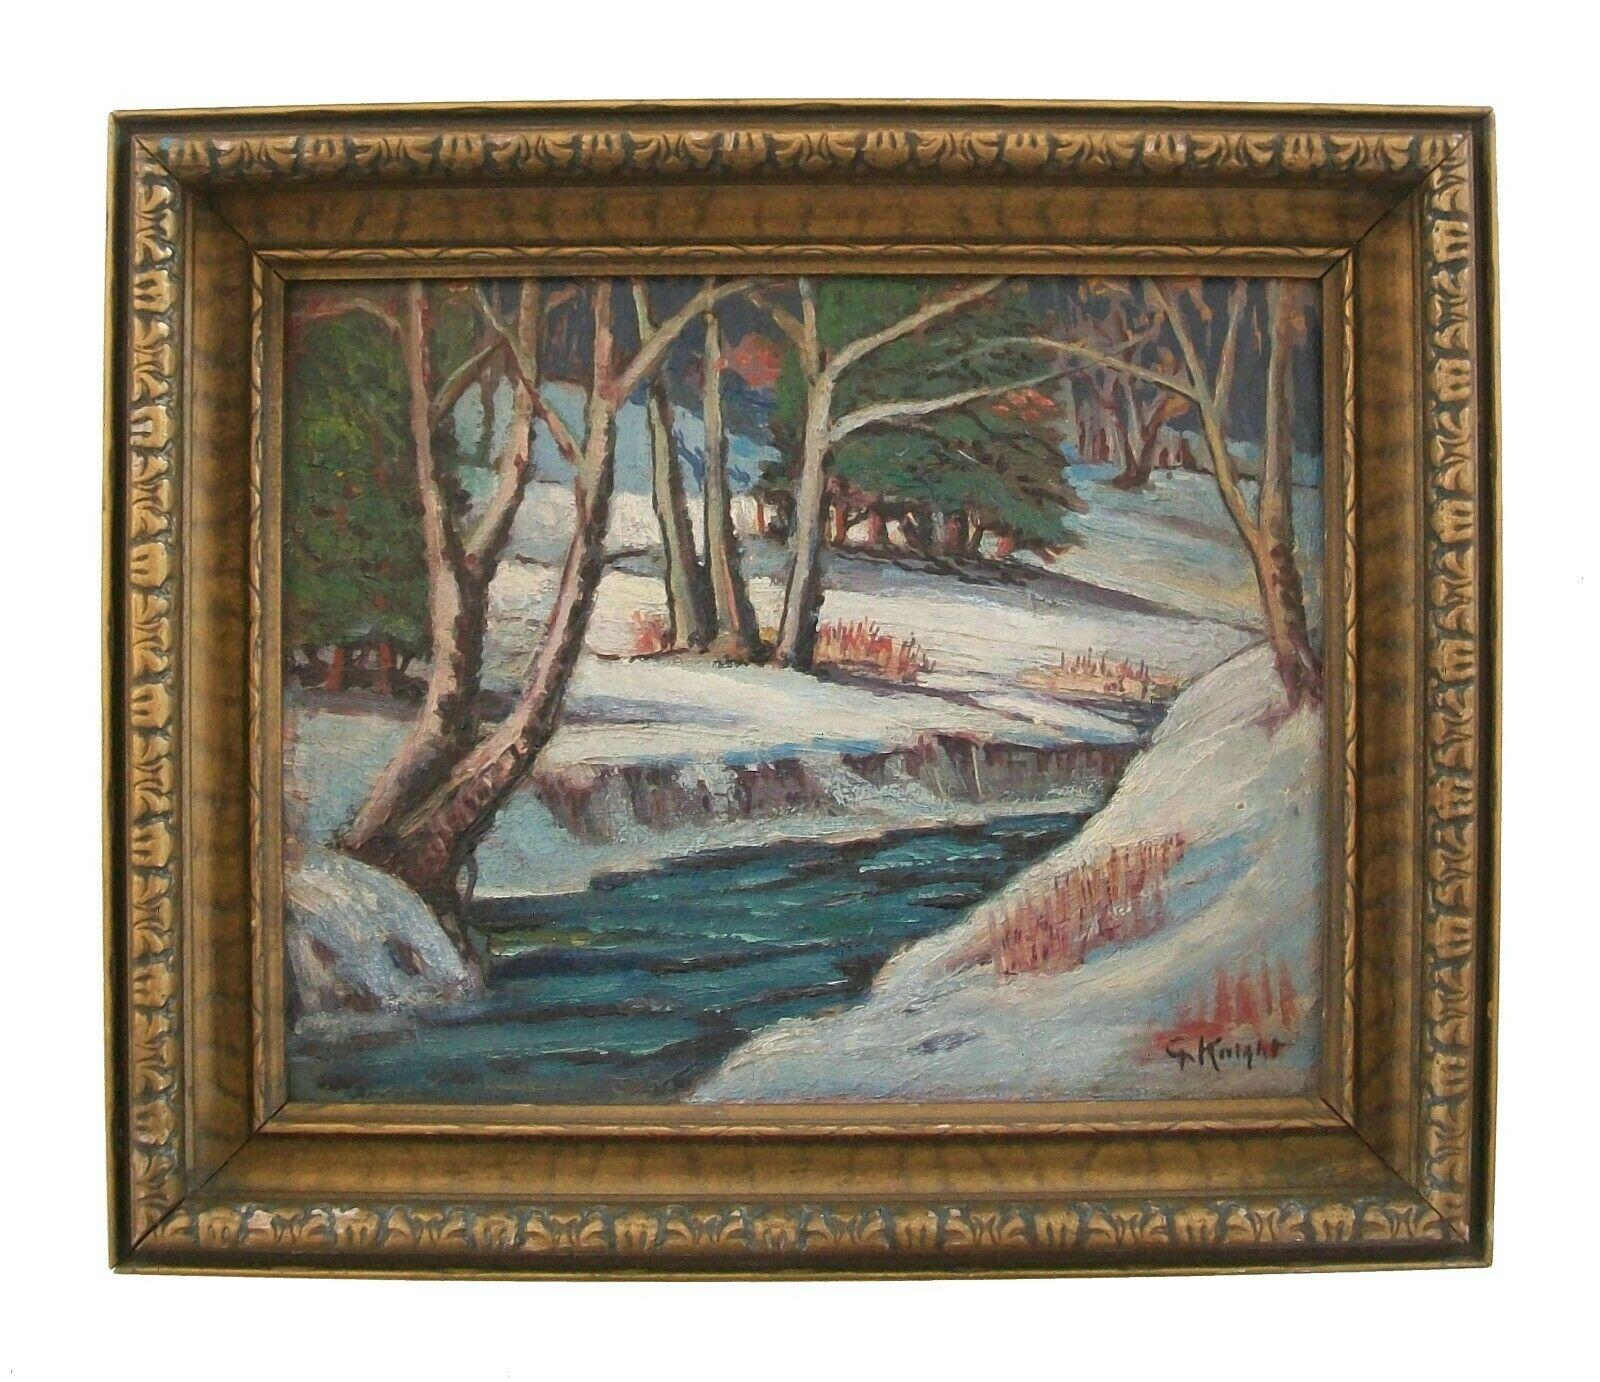 Gwendolyn Knight Lawrence (American 1913-2005) - 'Sans titre' - Peinture à l'huile post-impressionniste de paysage d'hiver sur panneau recouvert de toile d'artiste - cadre original en pin avec finition dorée - signé en bas à droite - États-Unis -